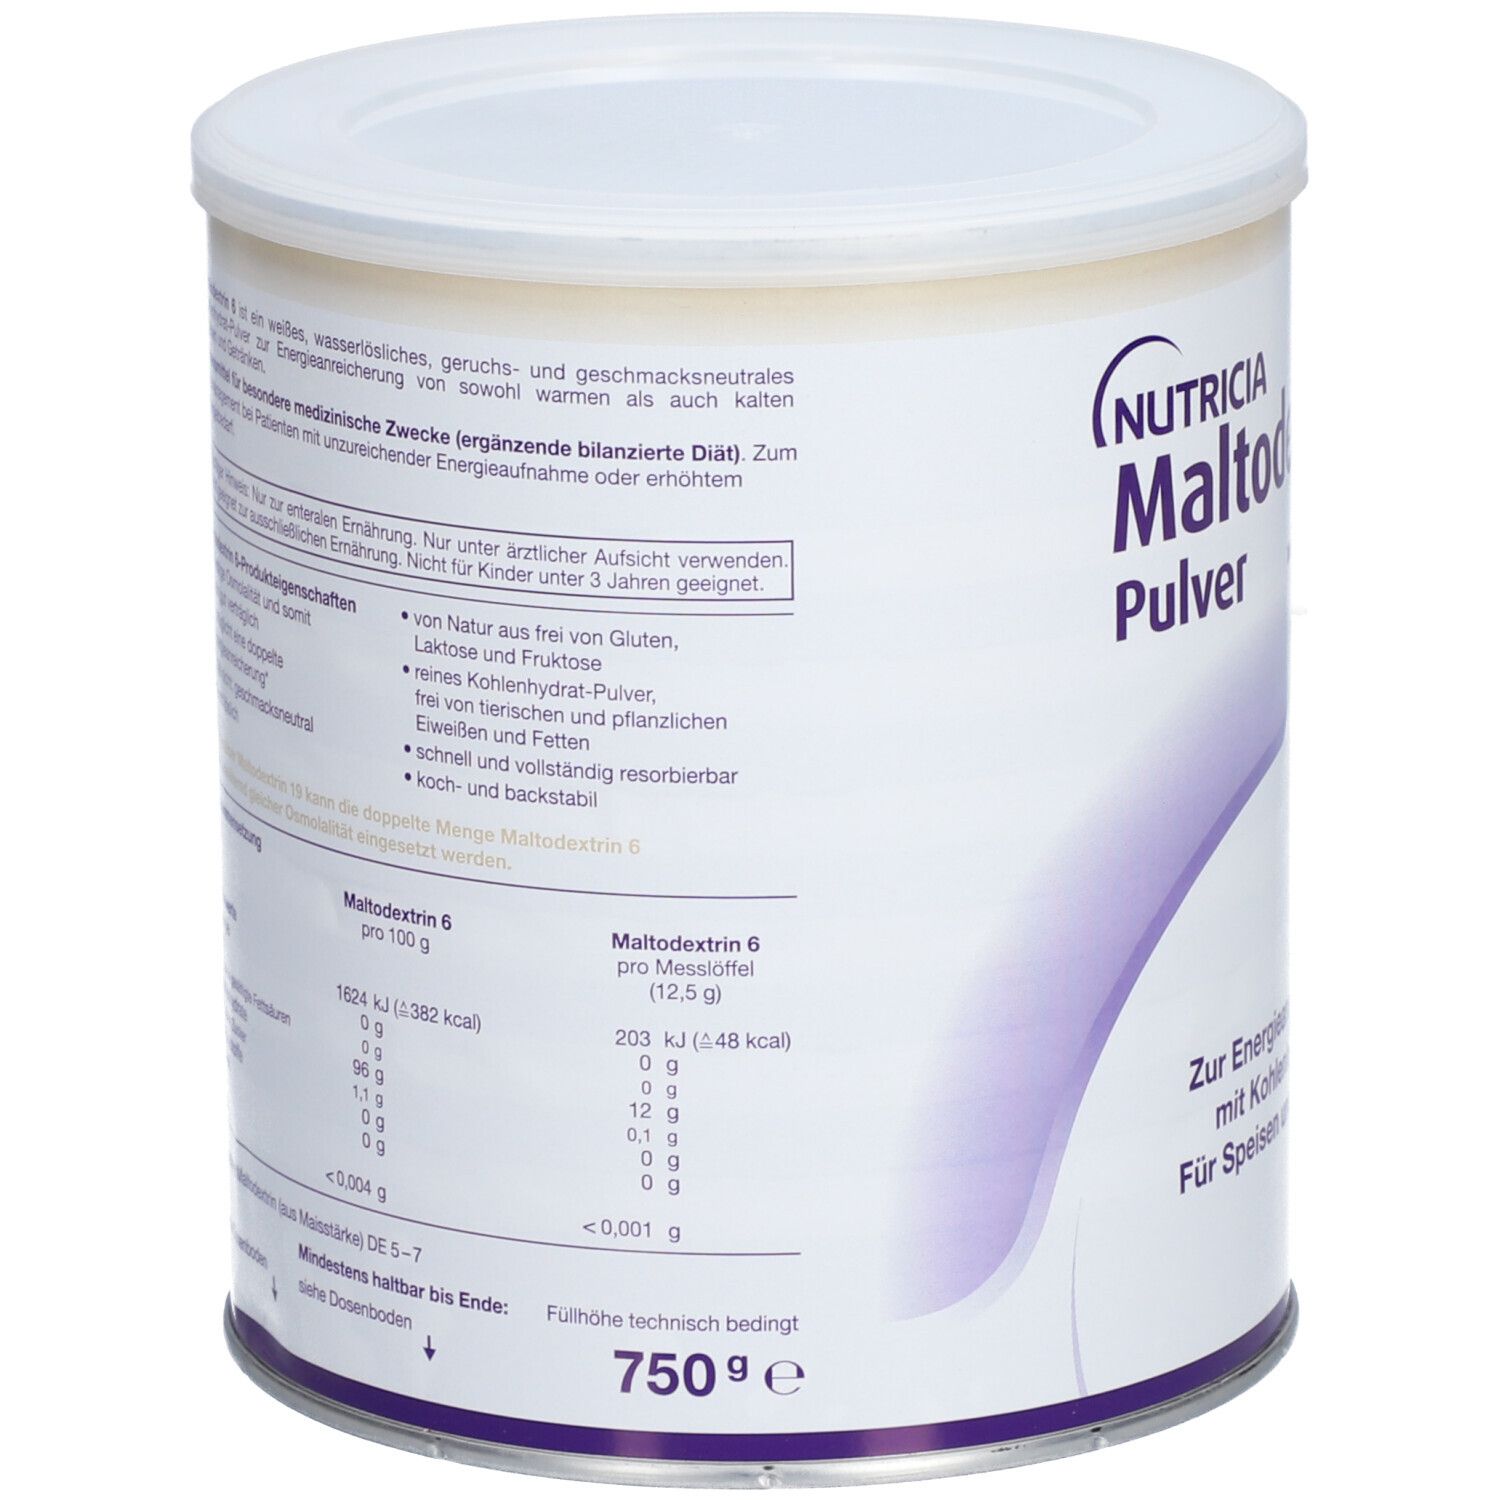 Maltodextrin 6 Pulver zur Energieanreicherung; geschmacksneutral